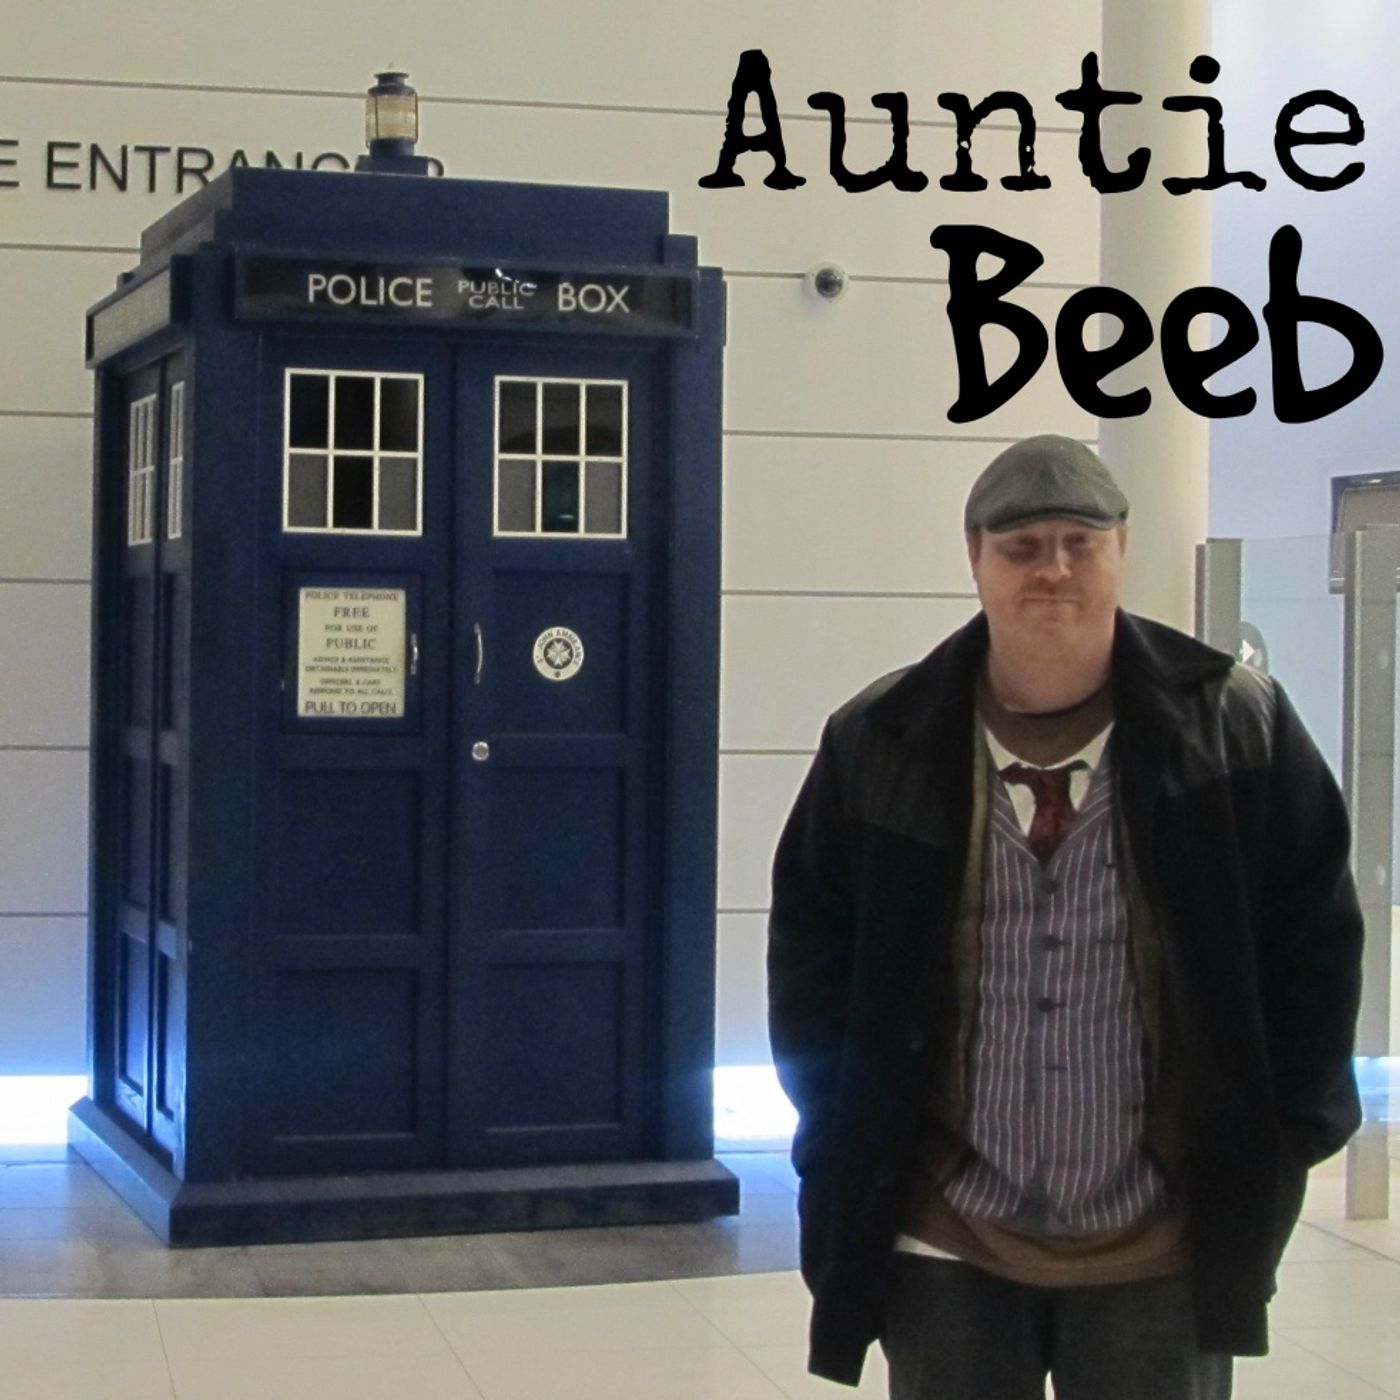 Auntie Beeb